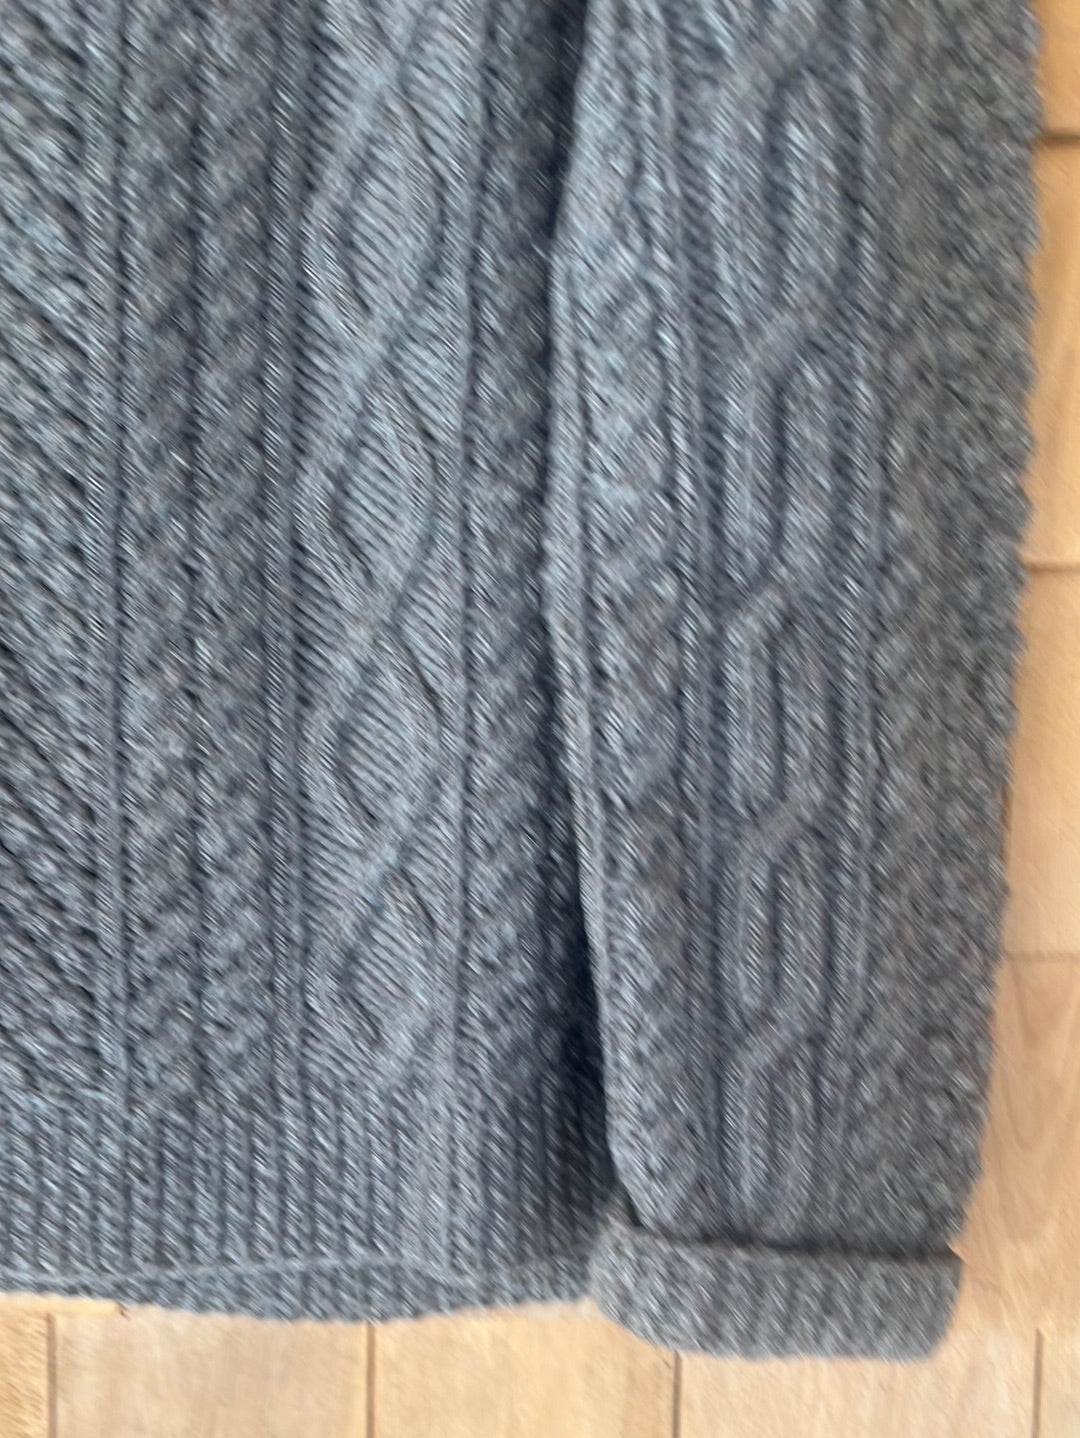 Vintage Hand Knit ARAN Wool Sweater - Dark Oatmeal